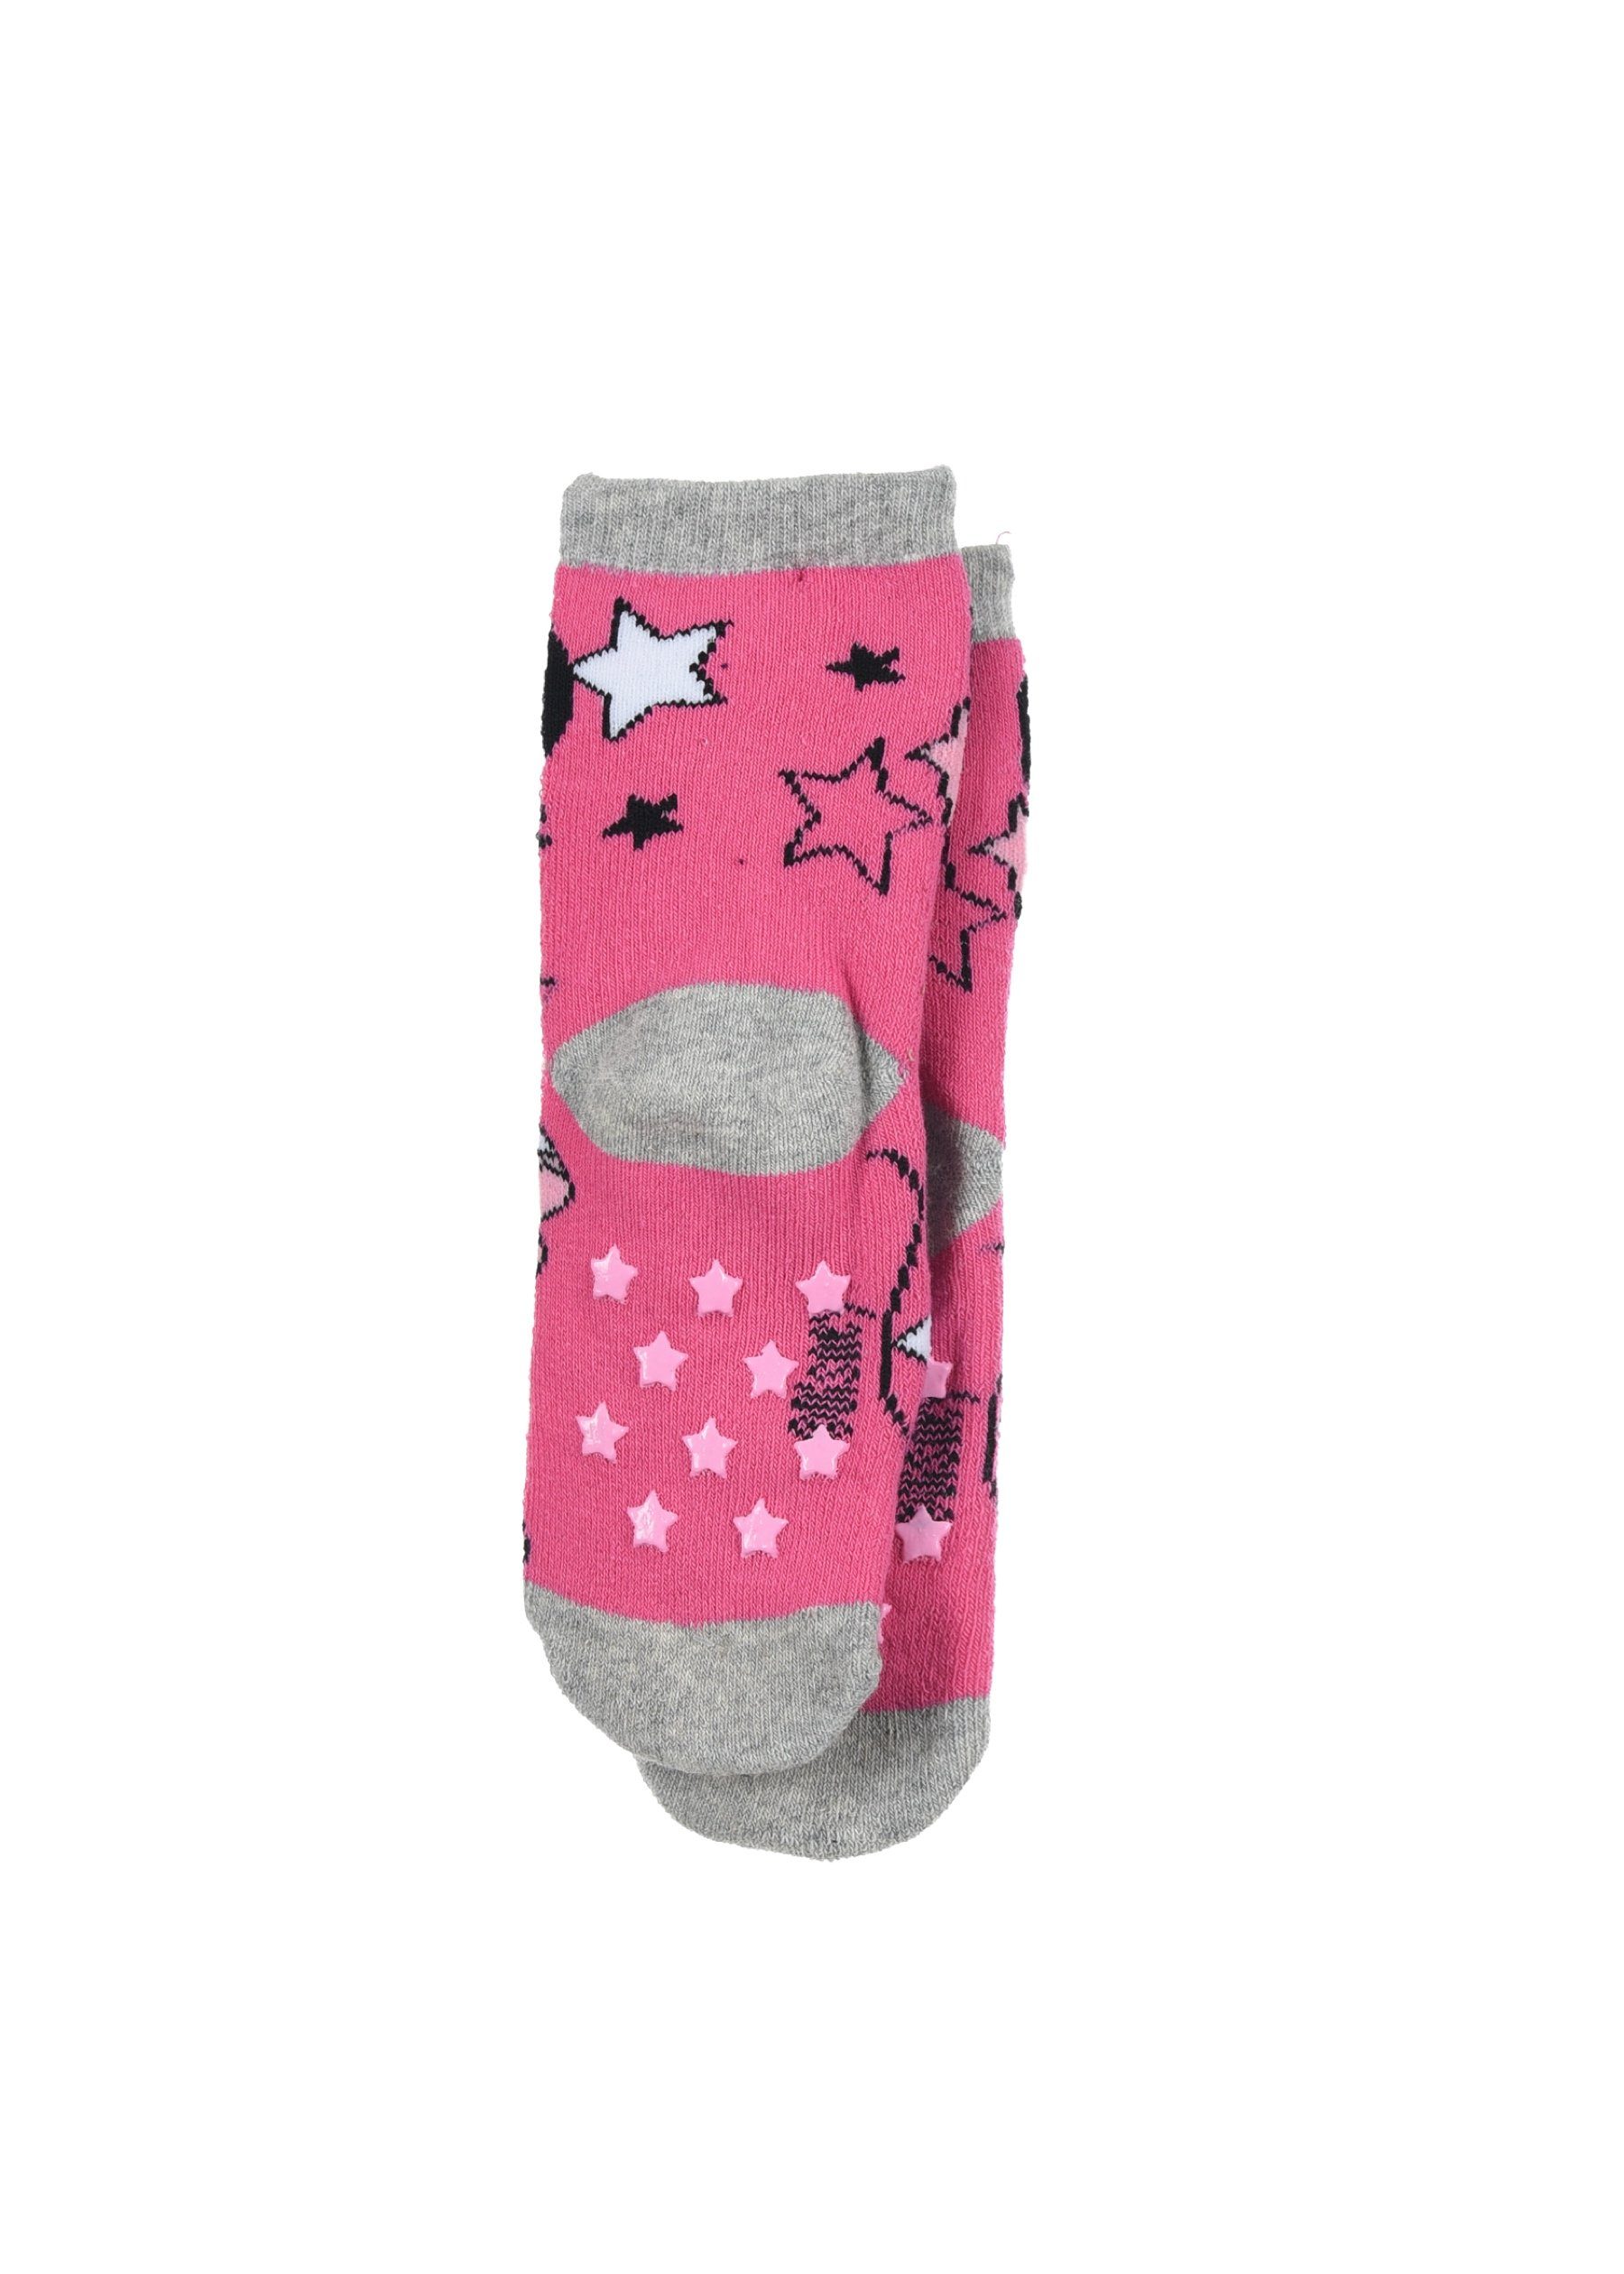 Minnie mit Strümpfe ABS-Socken Disney Socken (2-Paar) Gummi-Noppen Mouse Mädchen Kinder